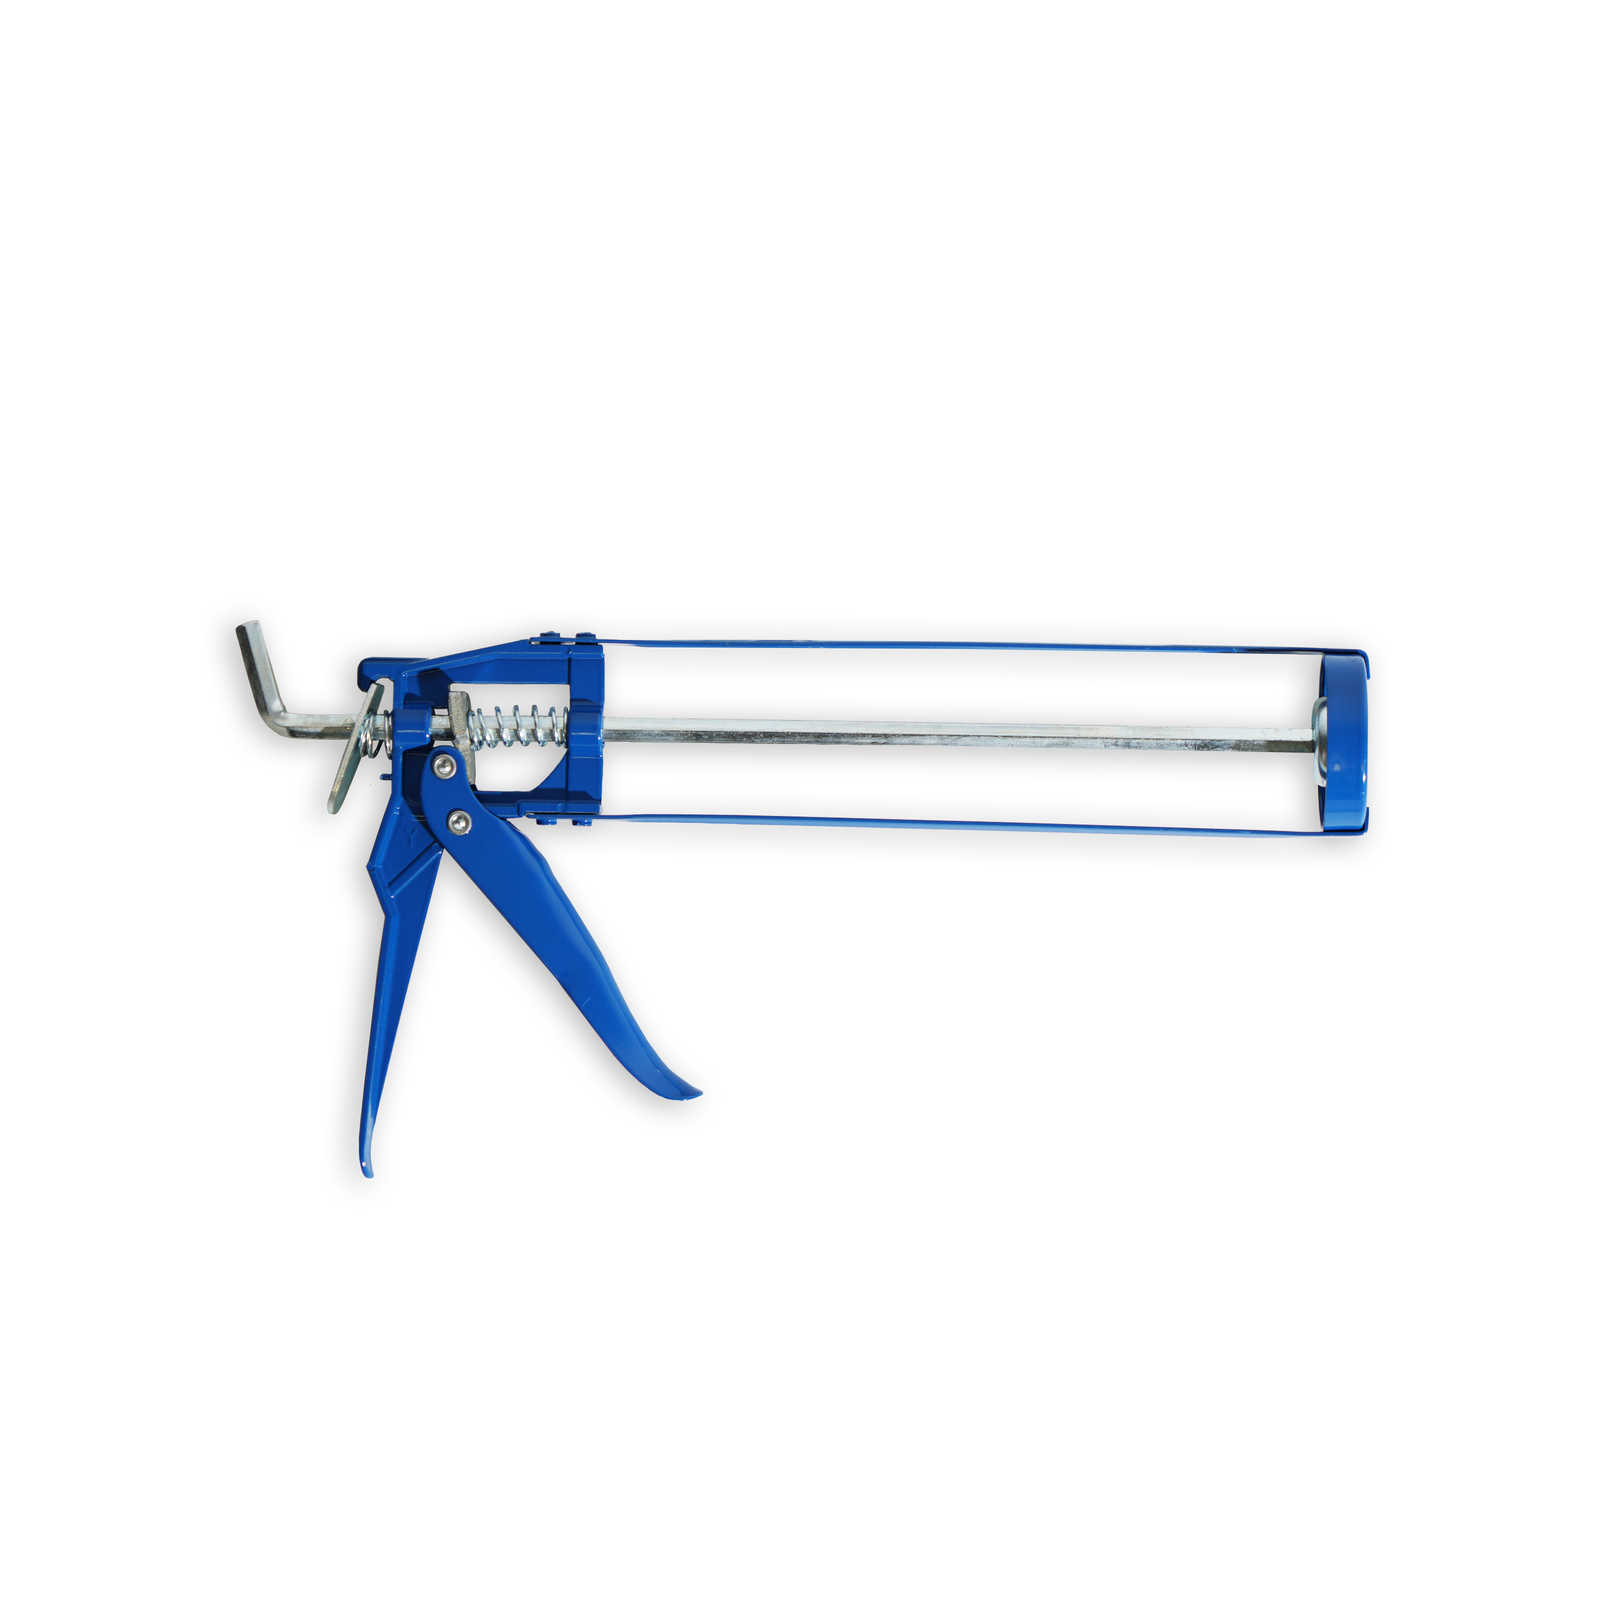         Cartridge gun 310ml metal skeleton in blue
    